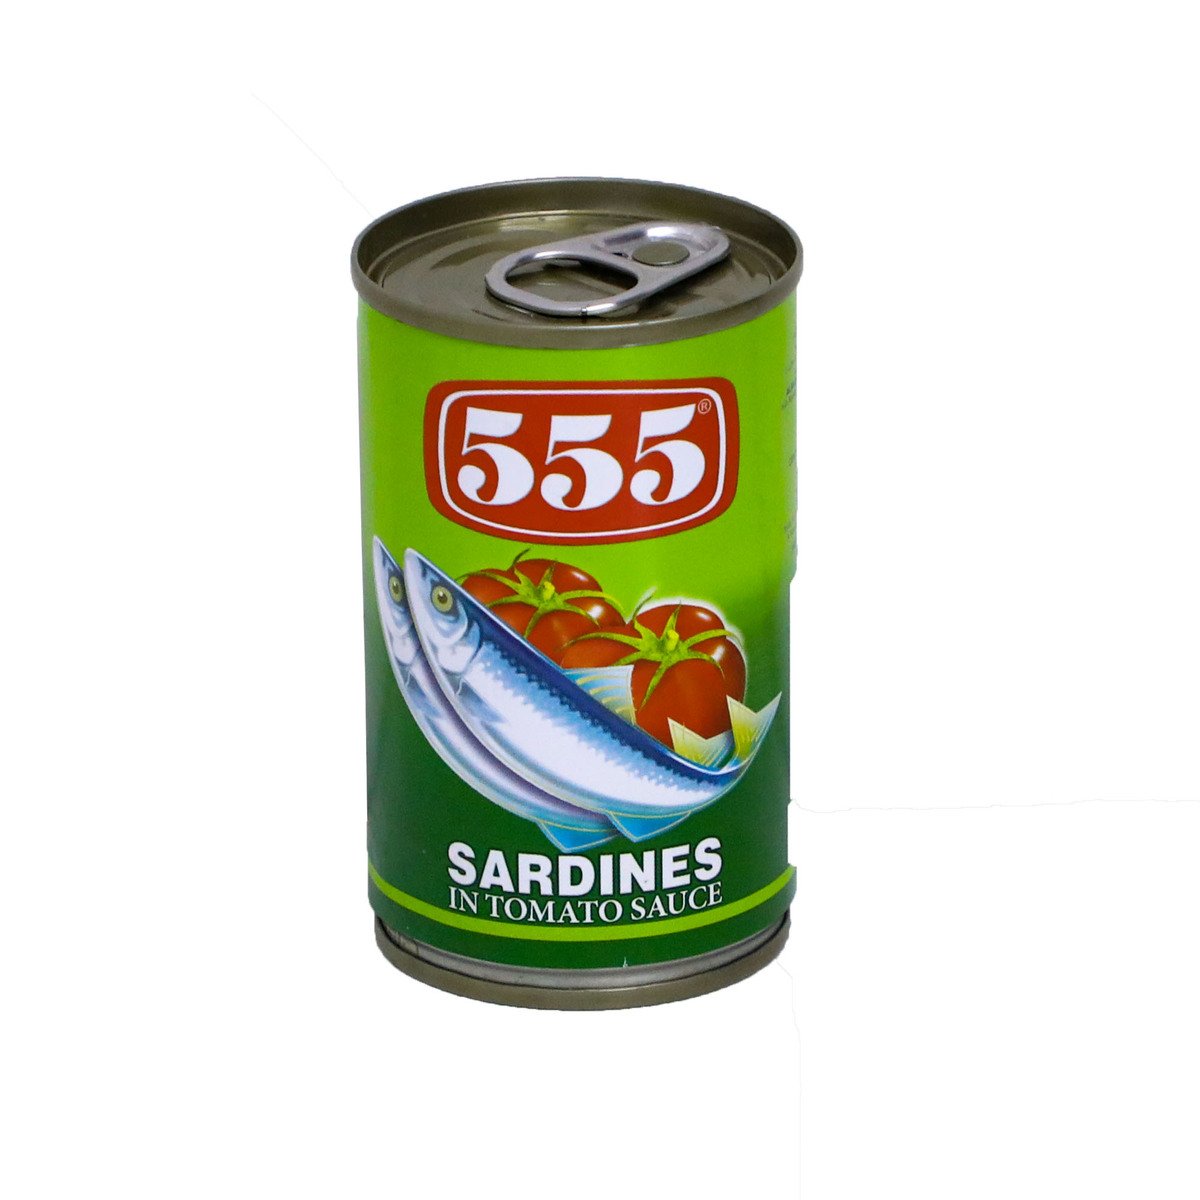 اشتري قم بشراء 555 سردين بصلصة الطماطم 155 جم Online at Best Price من الموقع - من لولو هايبر ماركت Canned Sardines في السعودية